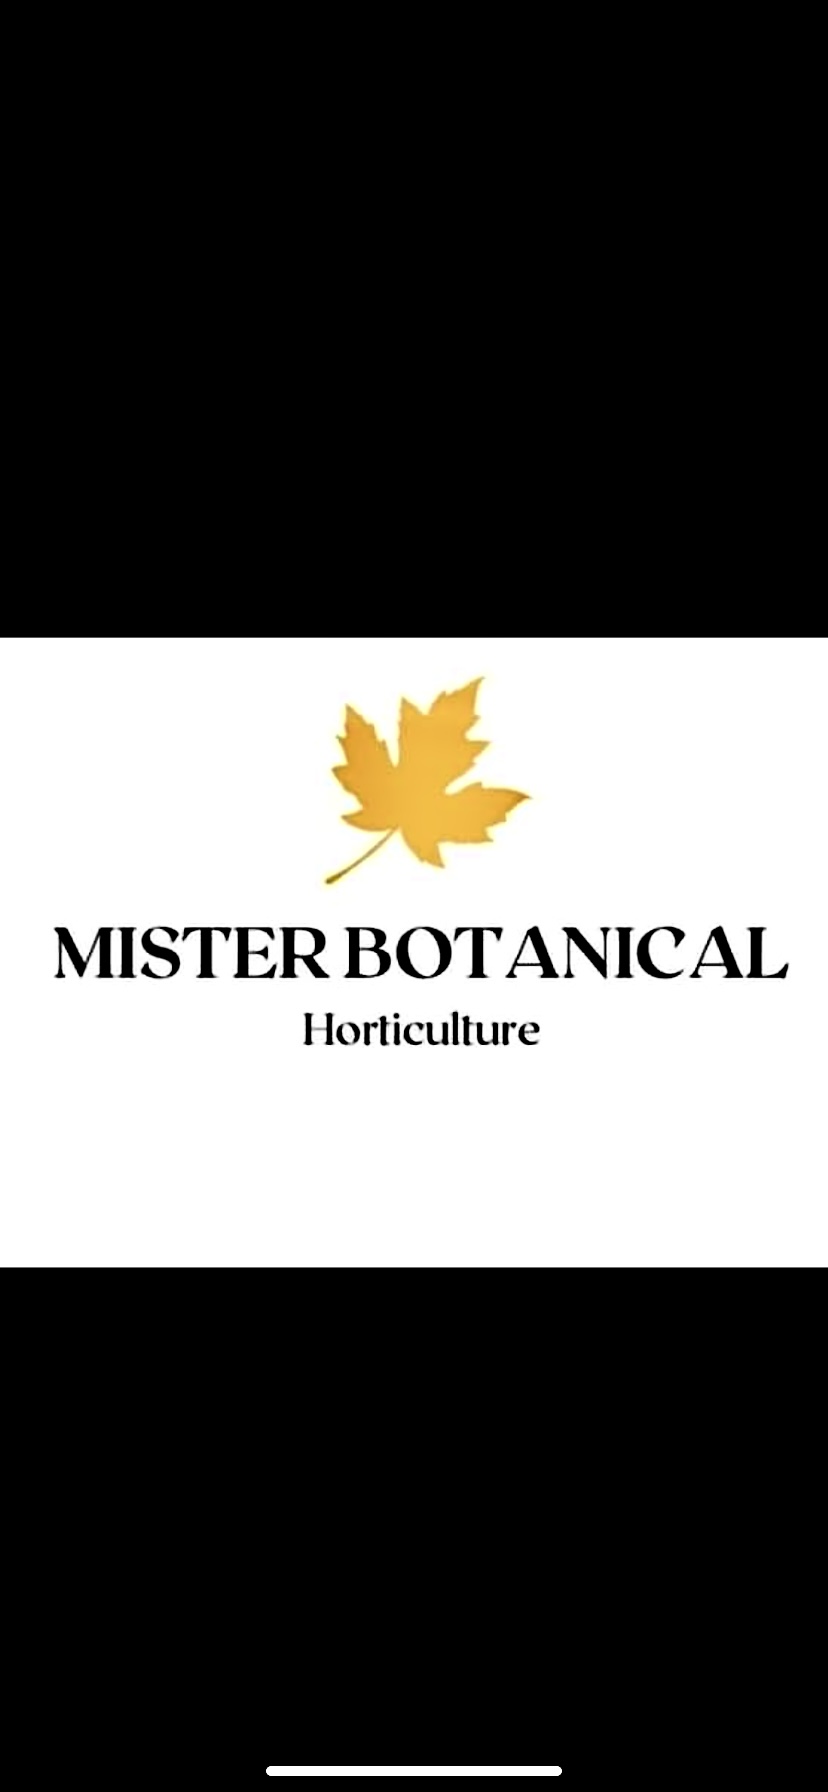 Mister Botanical Horticulture